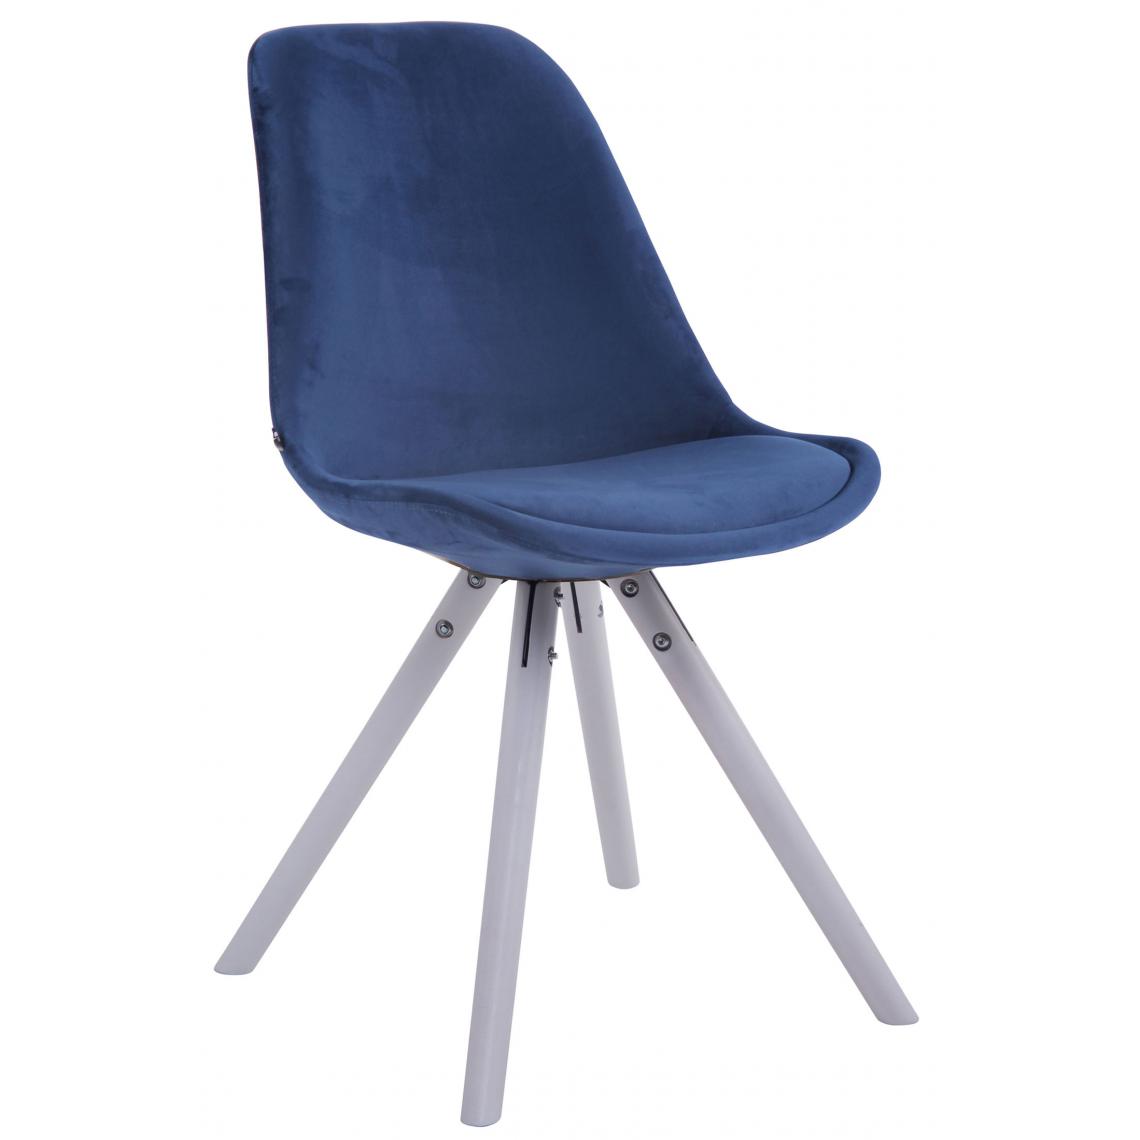 Icaverne - Moderne Chaise visiteur reference Katmandou velours rond blanc (chêne) couleur bleu - Chaises